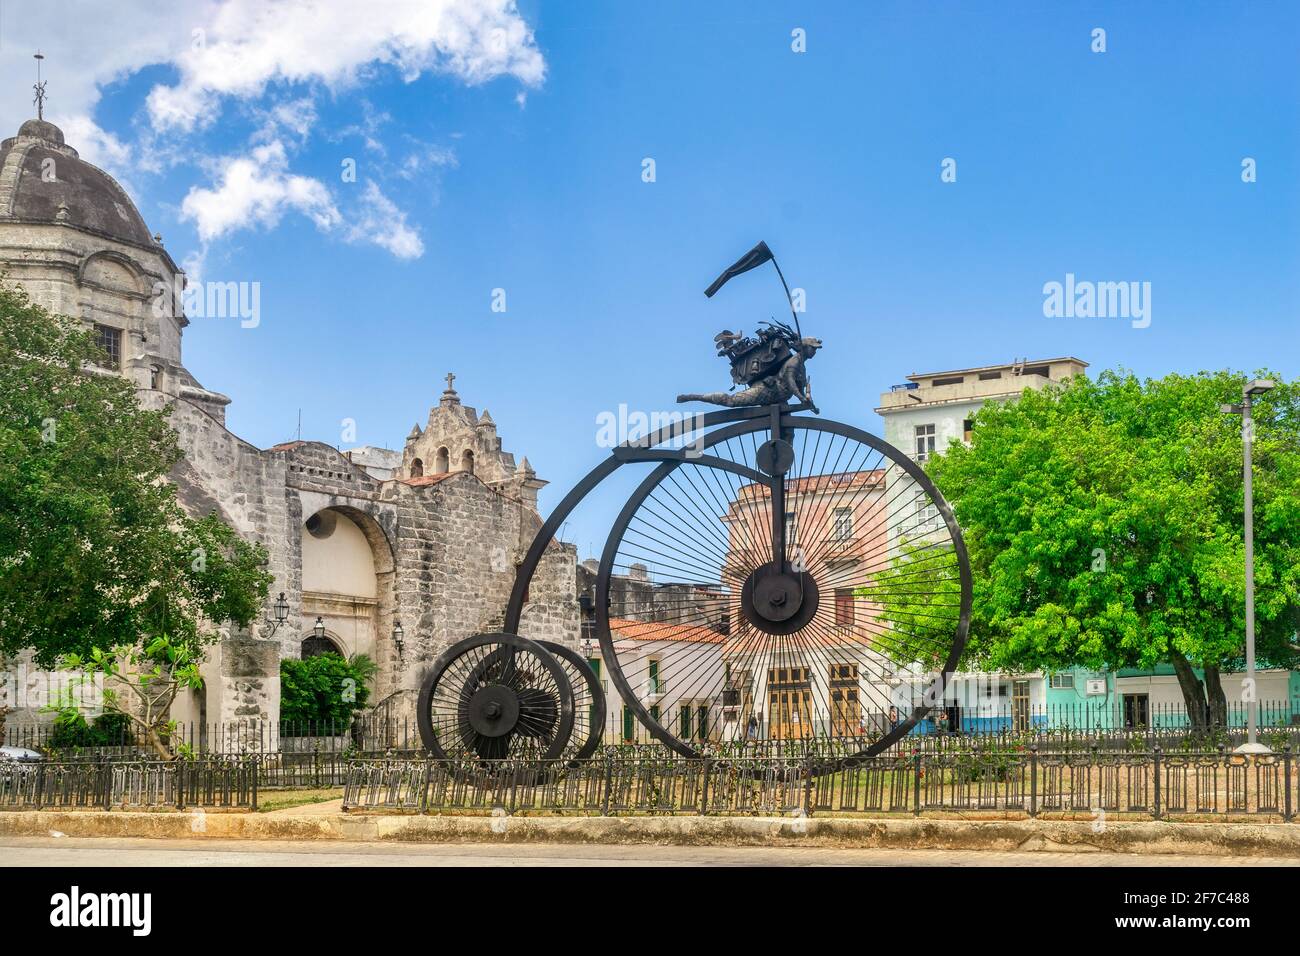 Contra Viento y Marea, a sculpture by Marta Jimenez, Havana, Cuba Stock Photo